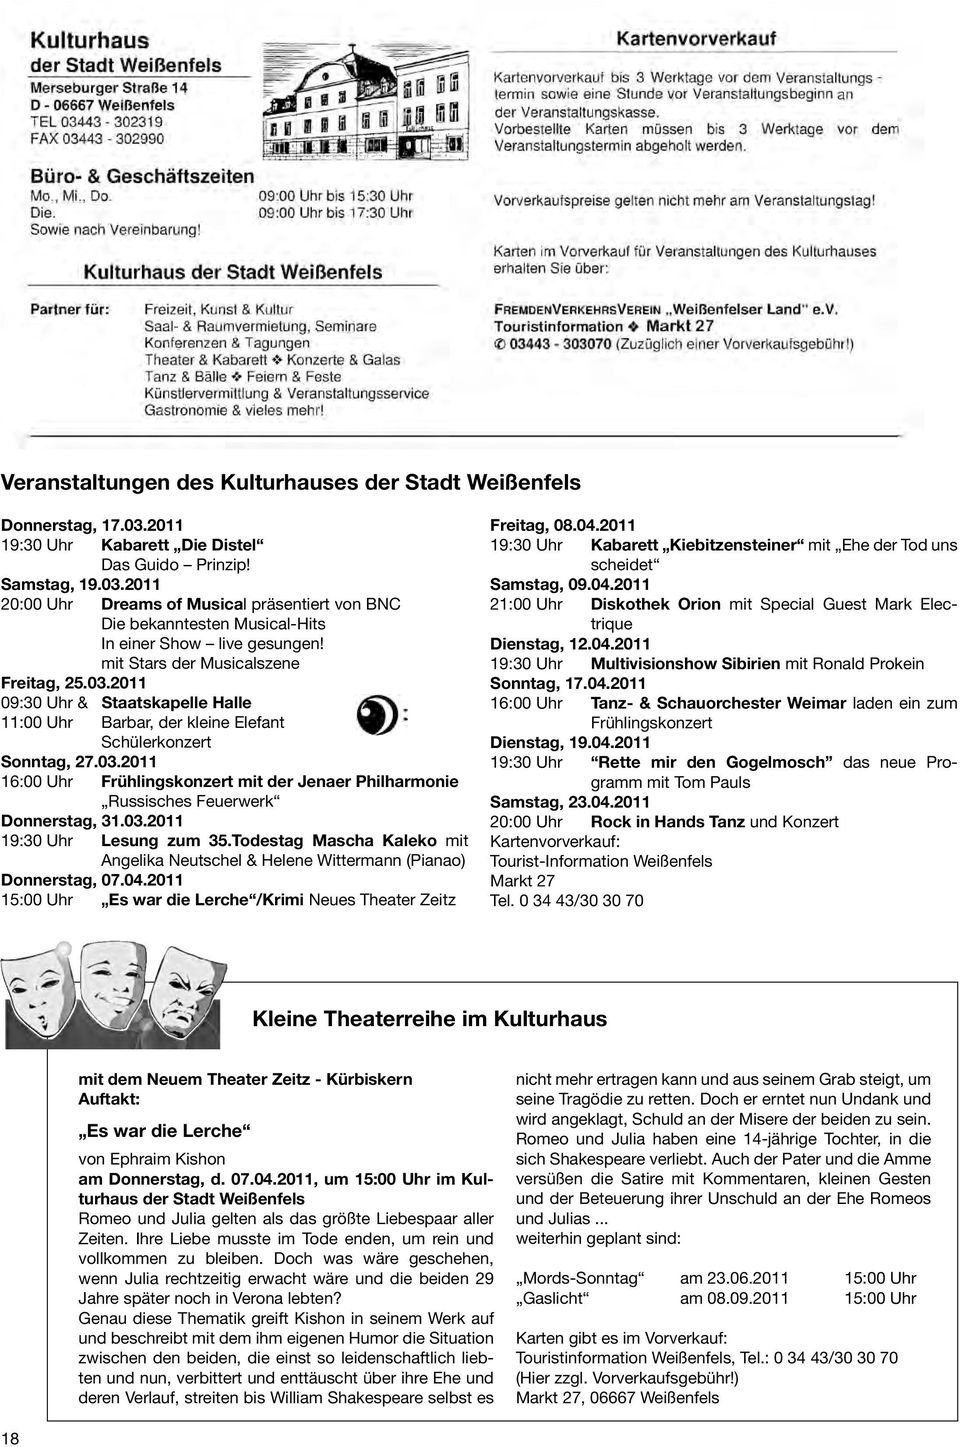 03.2011 19:30 Uhr Lesung zum 35.Todestag Mascha Kaleko mit Angelika Neutschel & Helene Wittermann (Pianao) Donnerstag, 07.04.